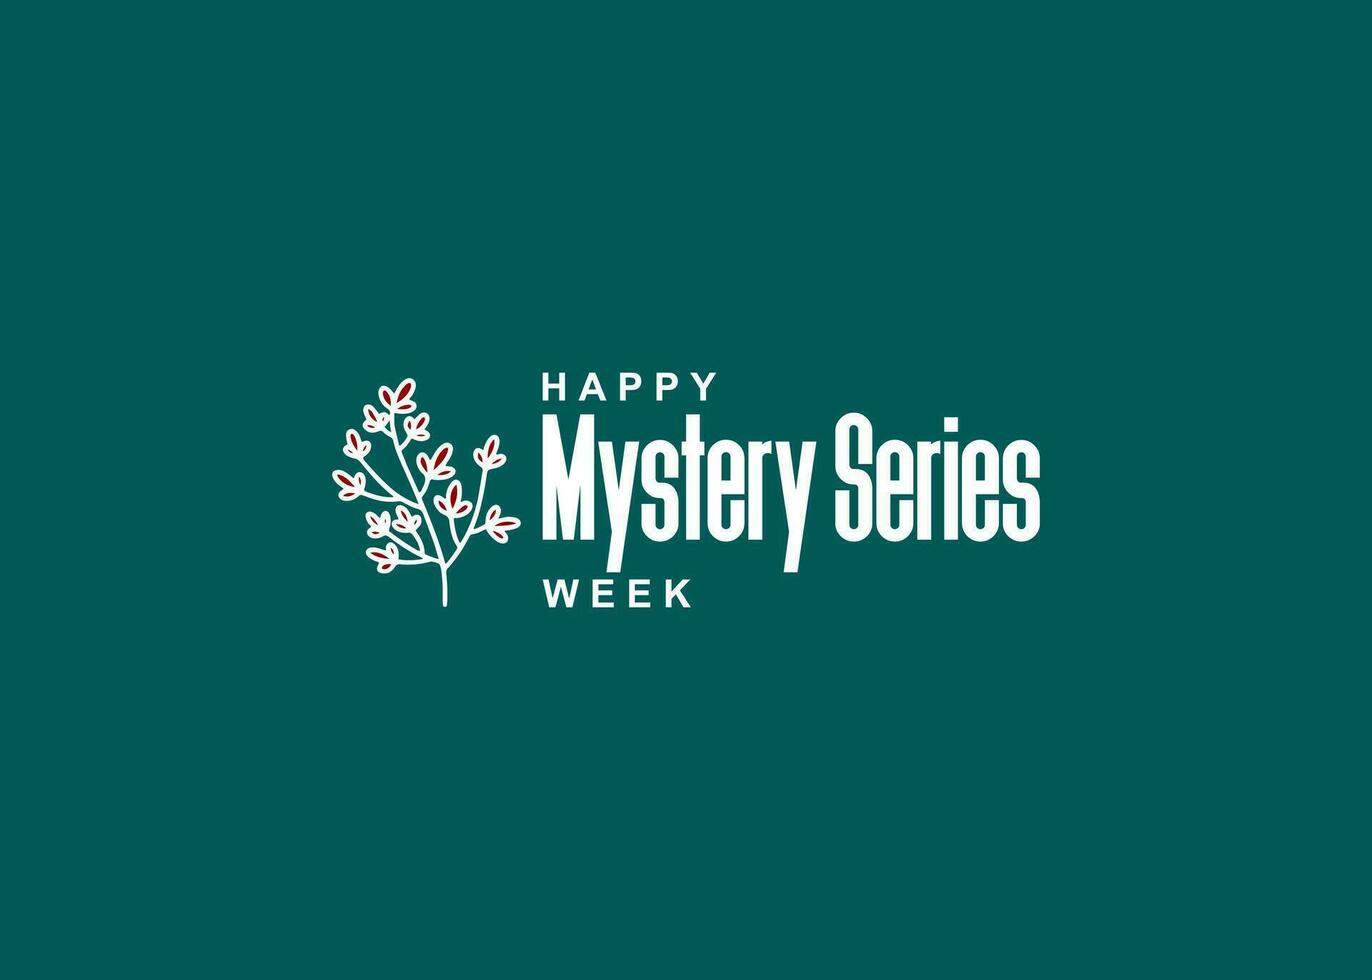 mysterie serie week vector